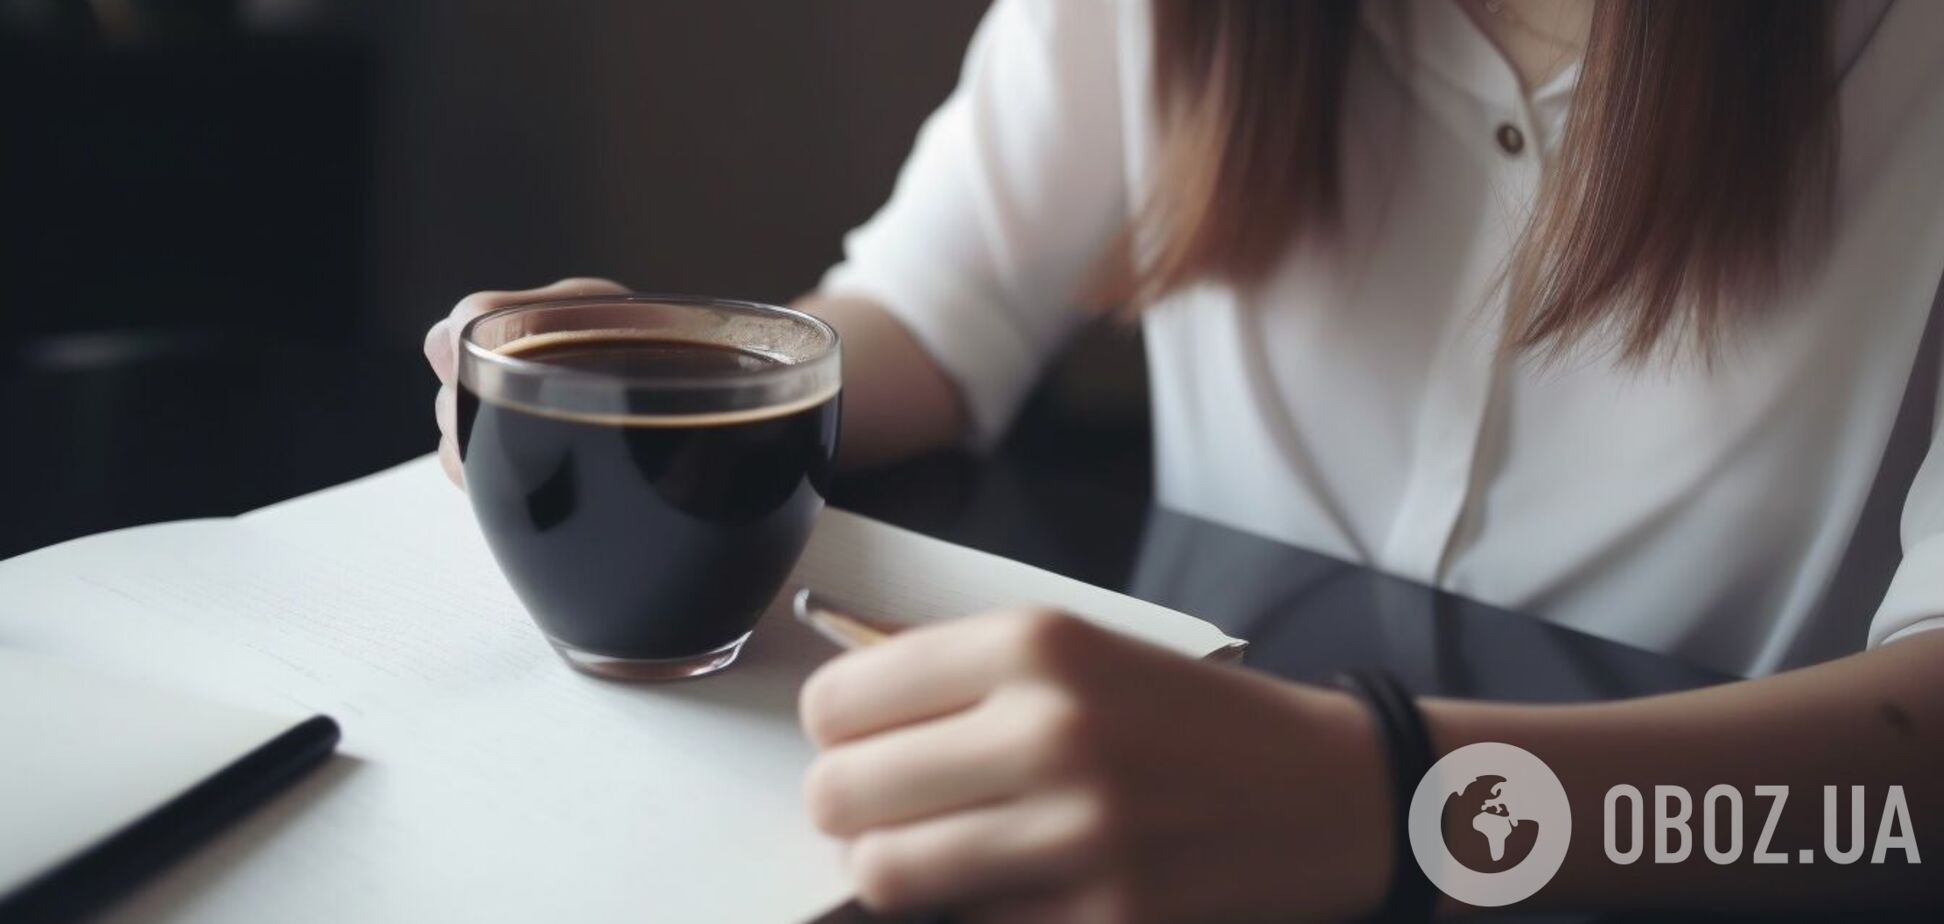 Навіщо на співбесіді пропонують каву: хитрий тест від роботодавців